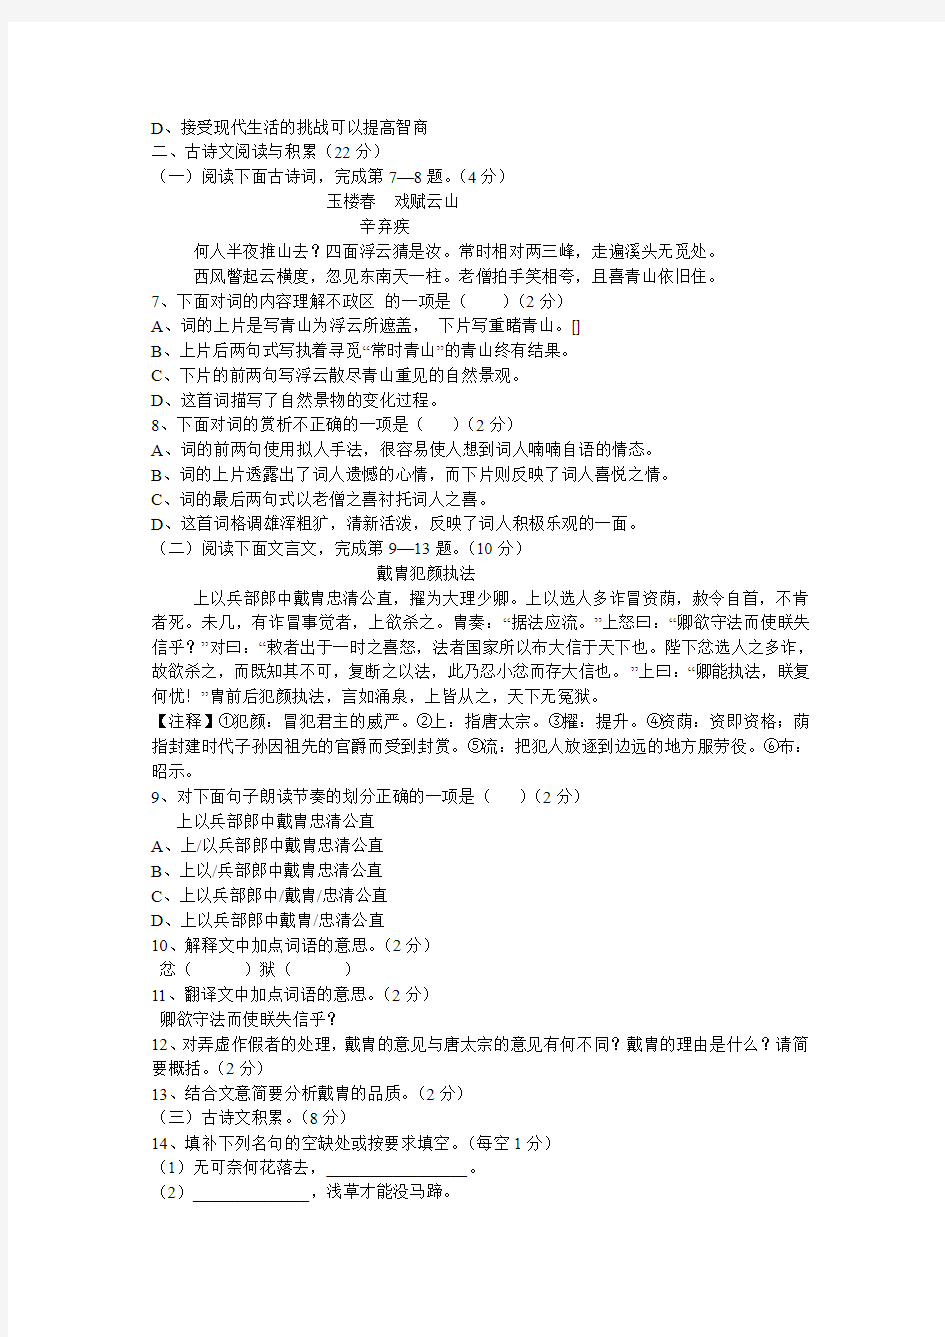 江西省2012年中等学校招生考试语文试题卷及答案